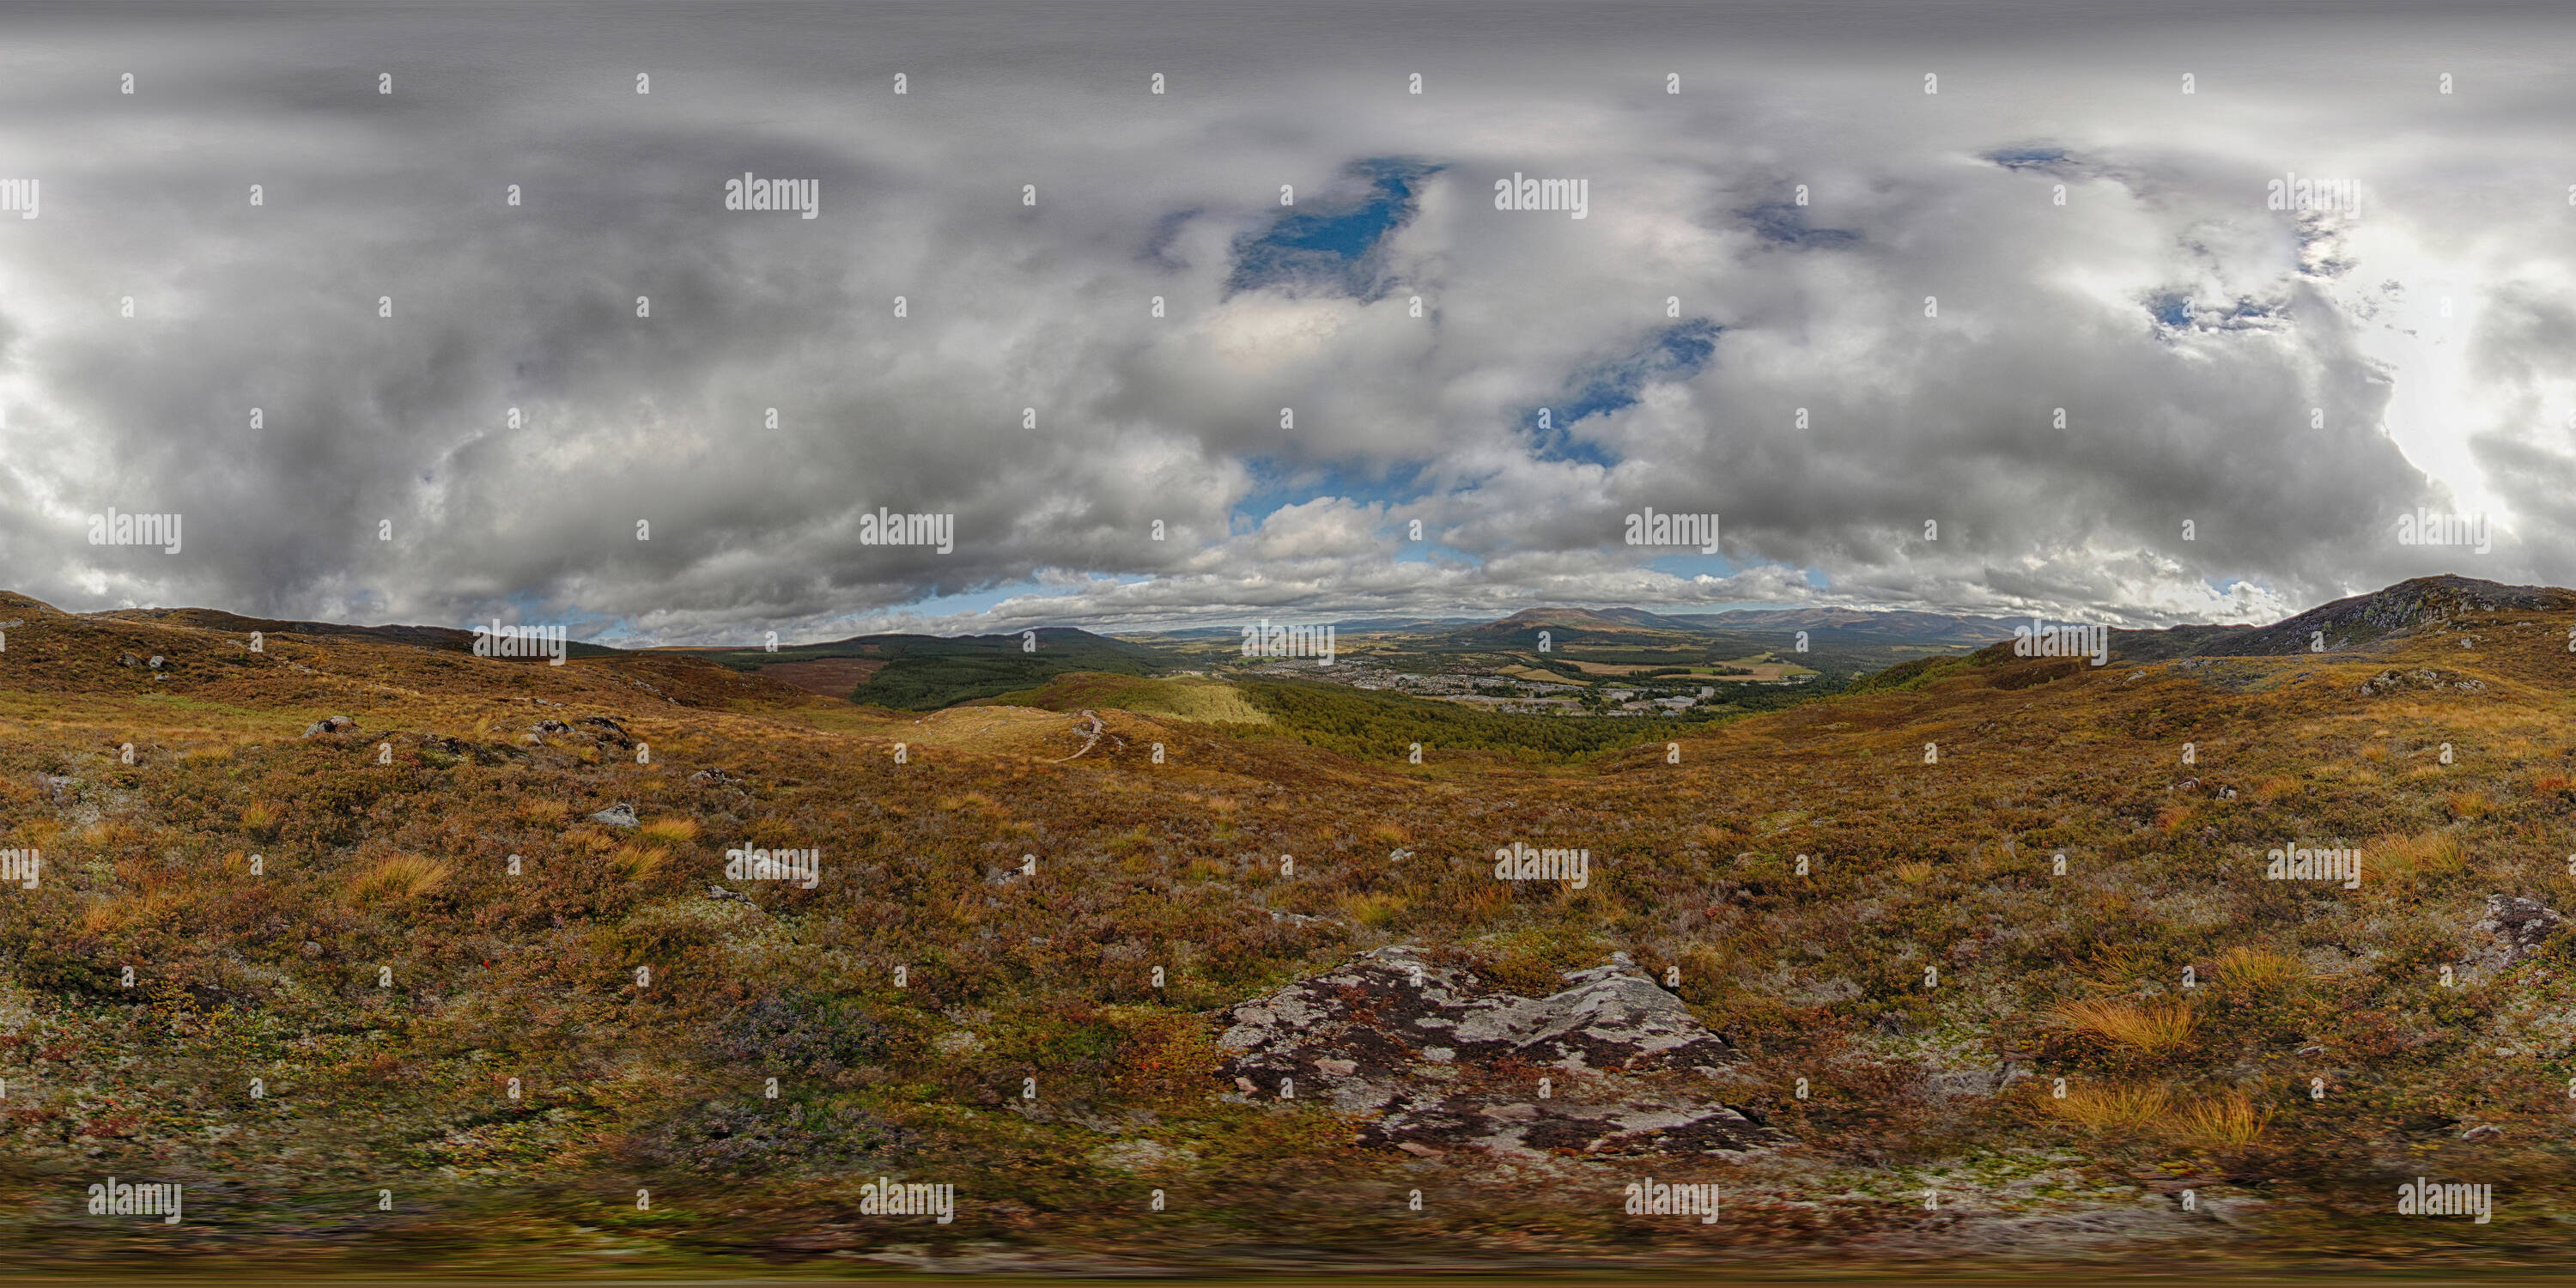 360 degree panoramic view of Scotland - Craigellachie - 02